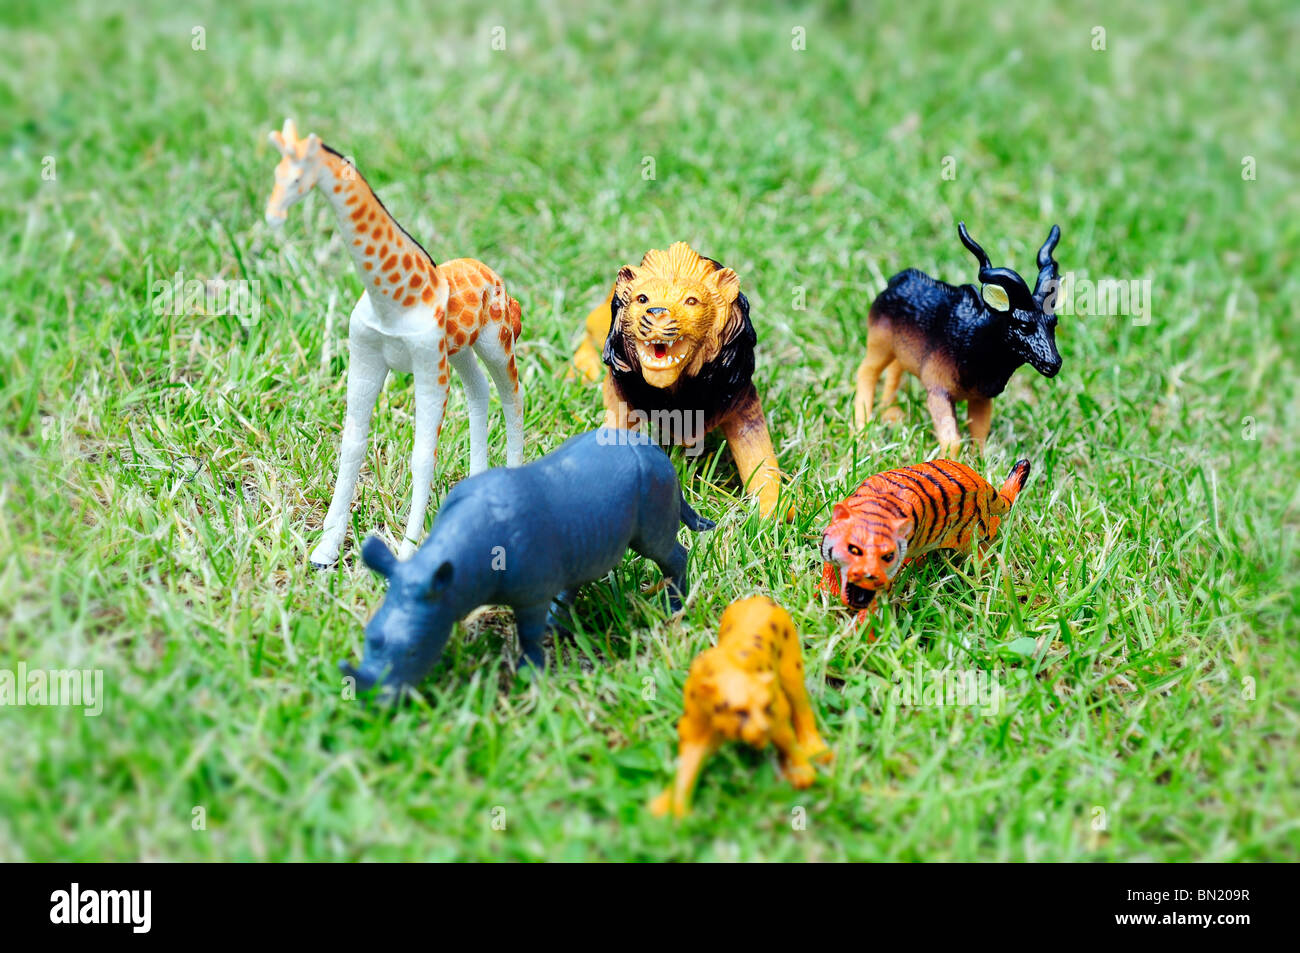 toy zoo animals Stock Photo